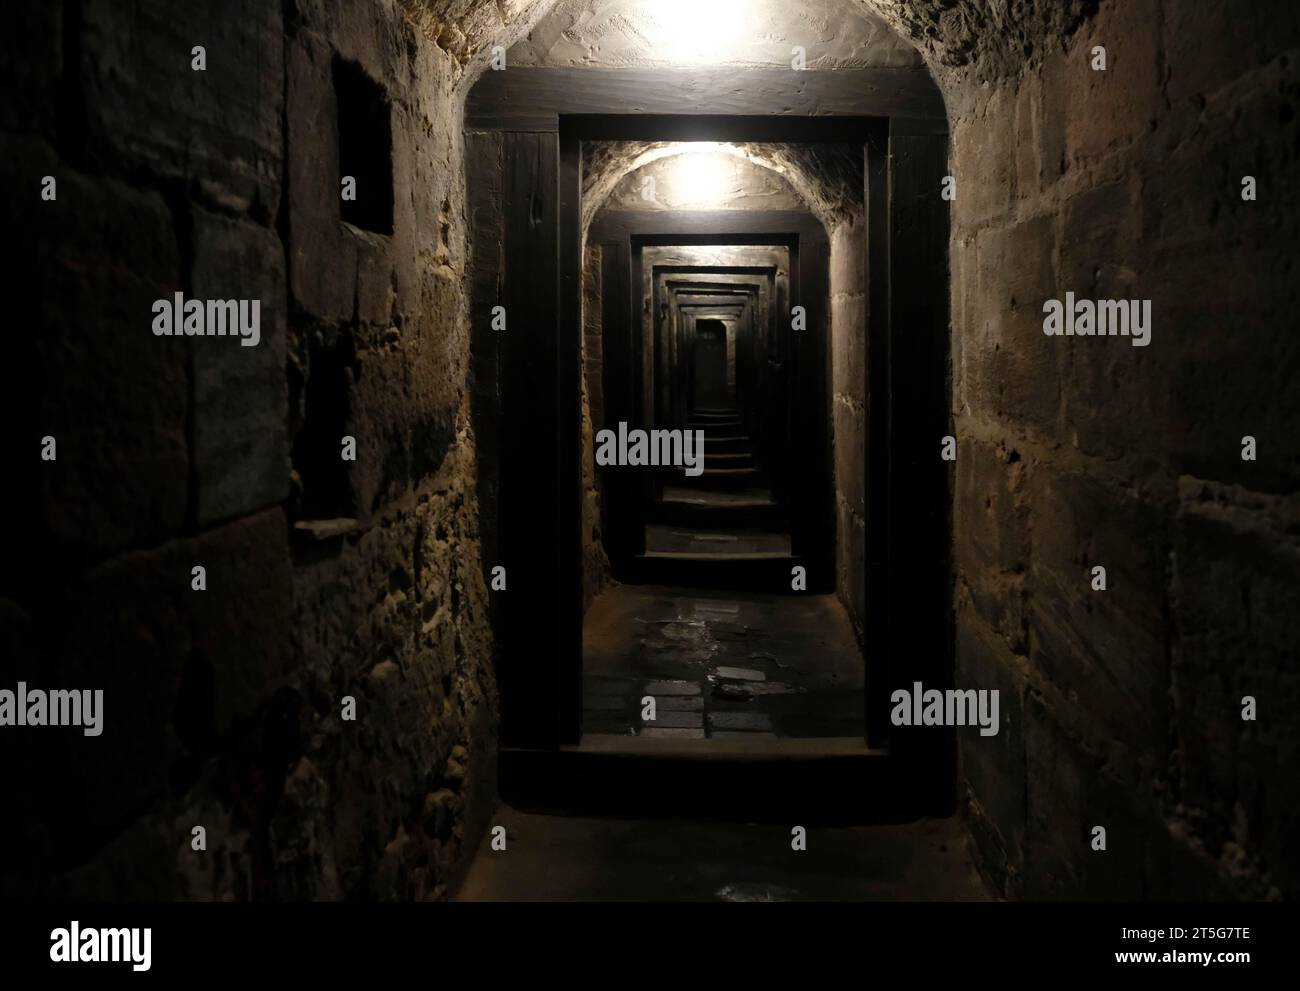 A l'intérieur de la sombre prison médiévale de la ville de Nuremberg, Allemagne Banque D'Images